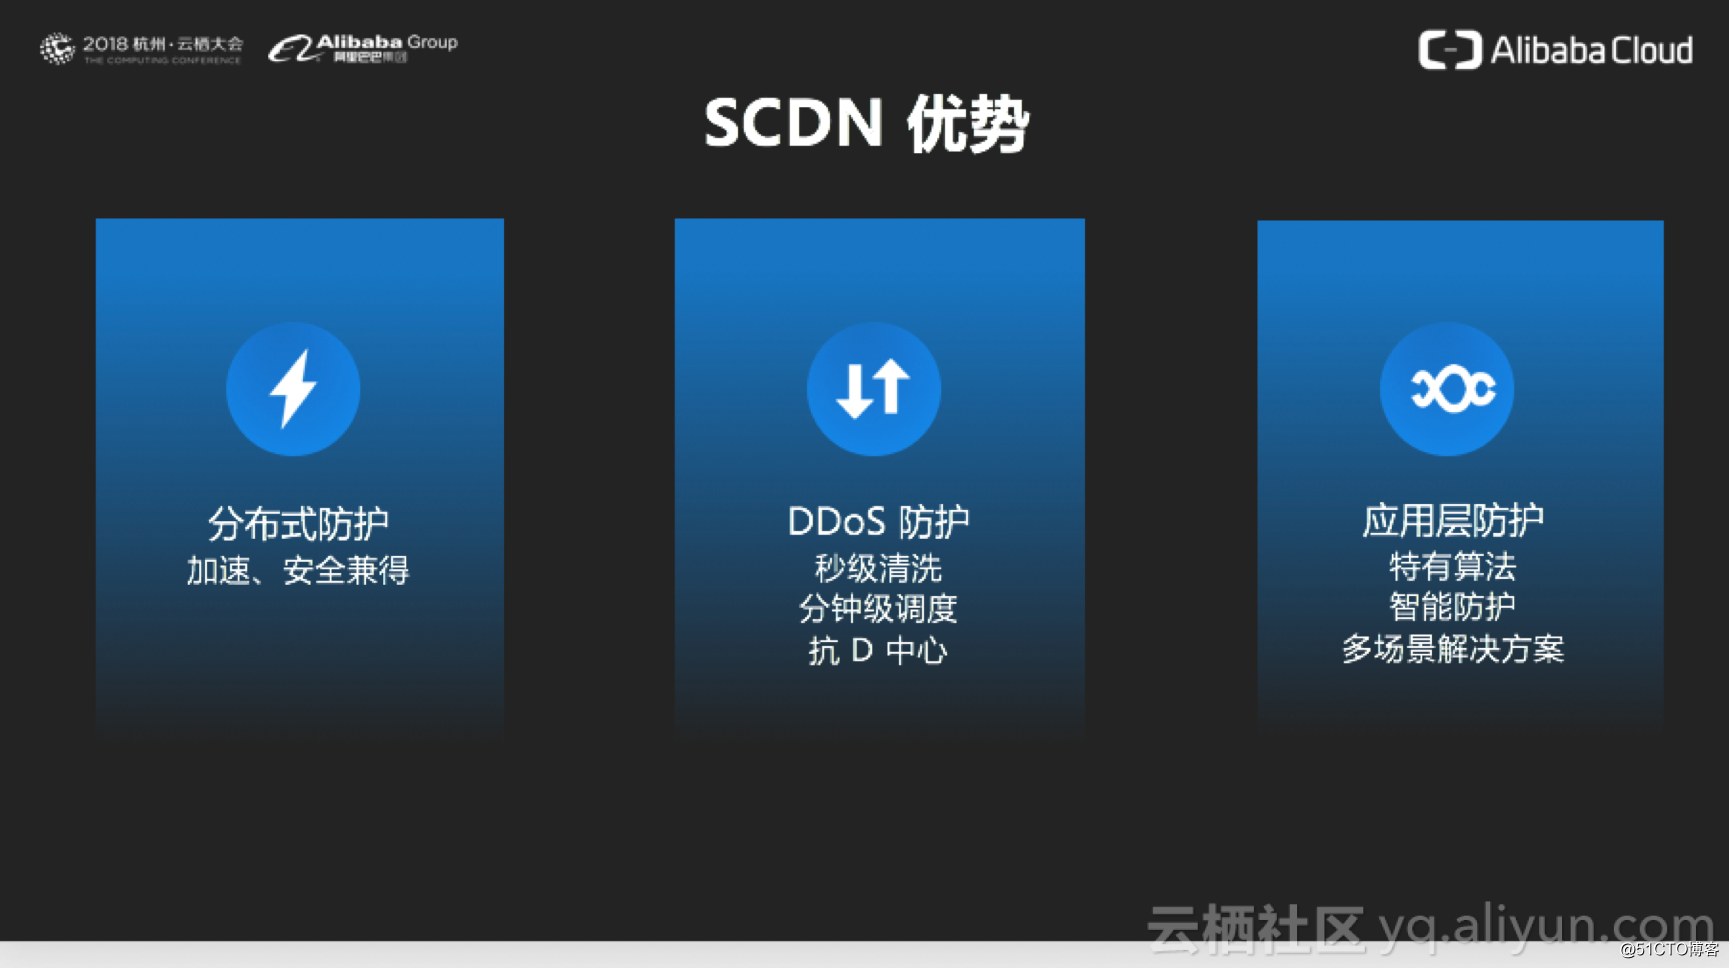 阿里云高级技术专家赵伟：安全加速 SCDN 设计与案例